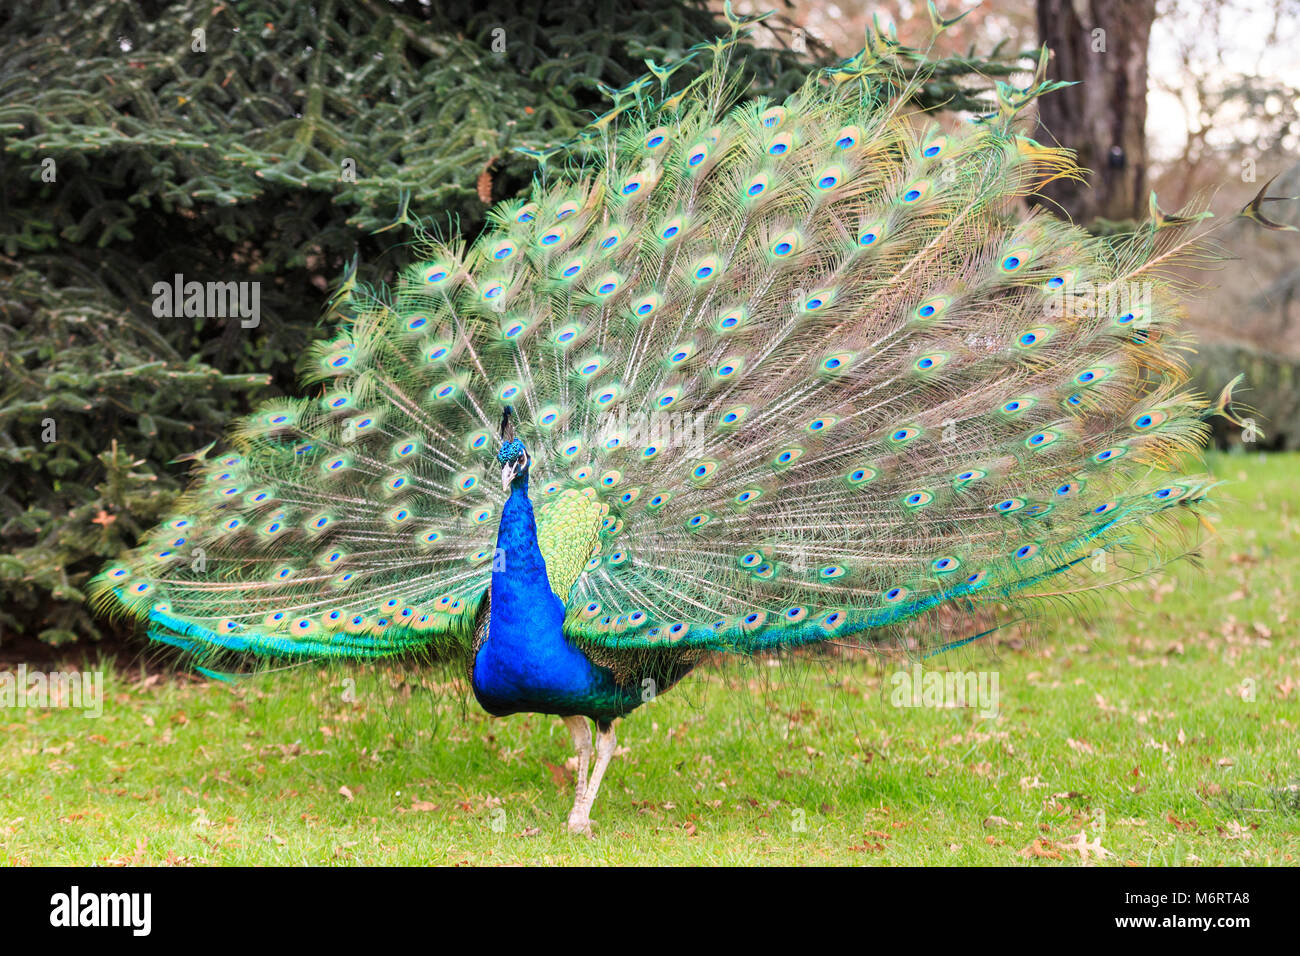 Peacock, männlichen Pfau () seine Flügel ausbreitet und die Öffnung ihrer Federn für eine vollständige feather Anzeige in Parkland Stockfoto